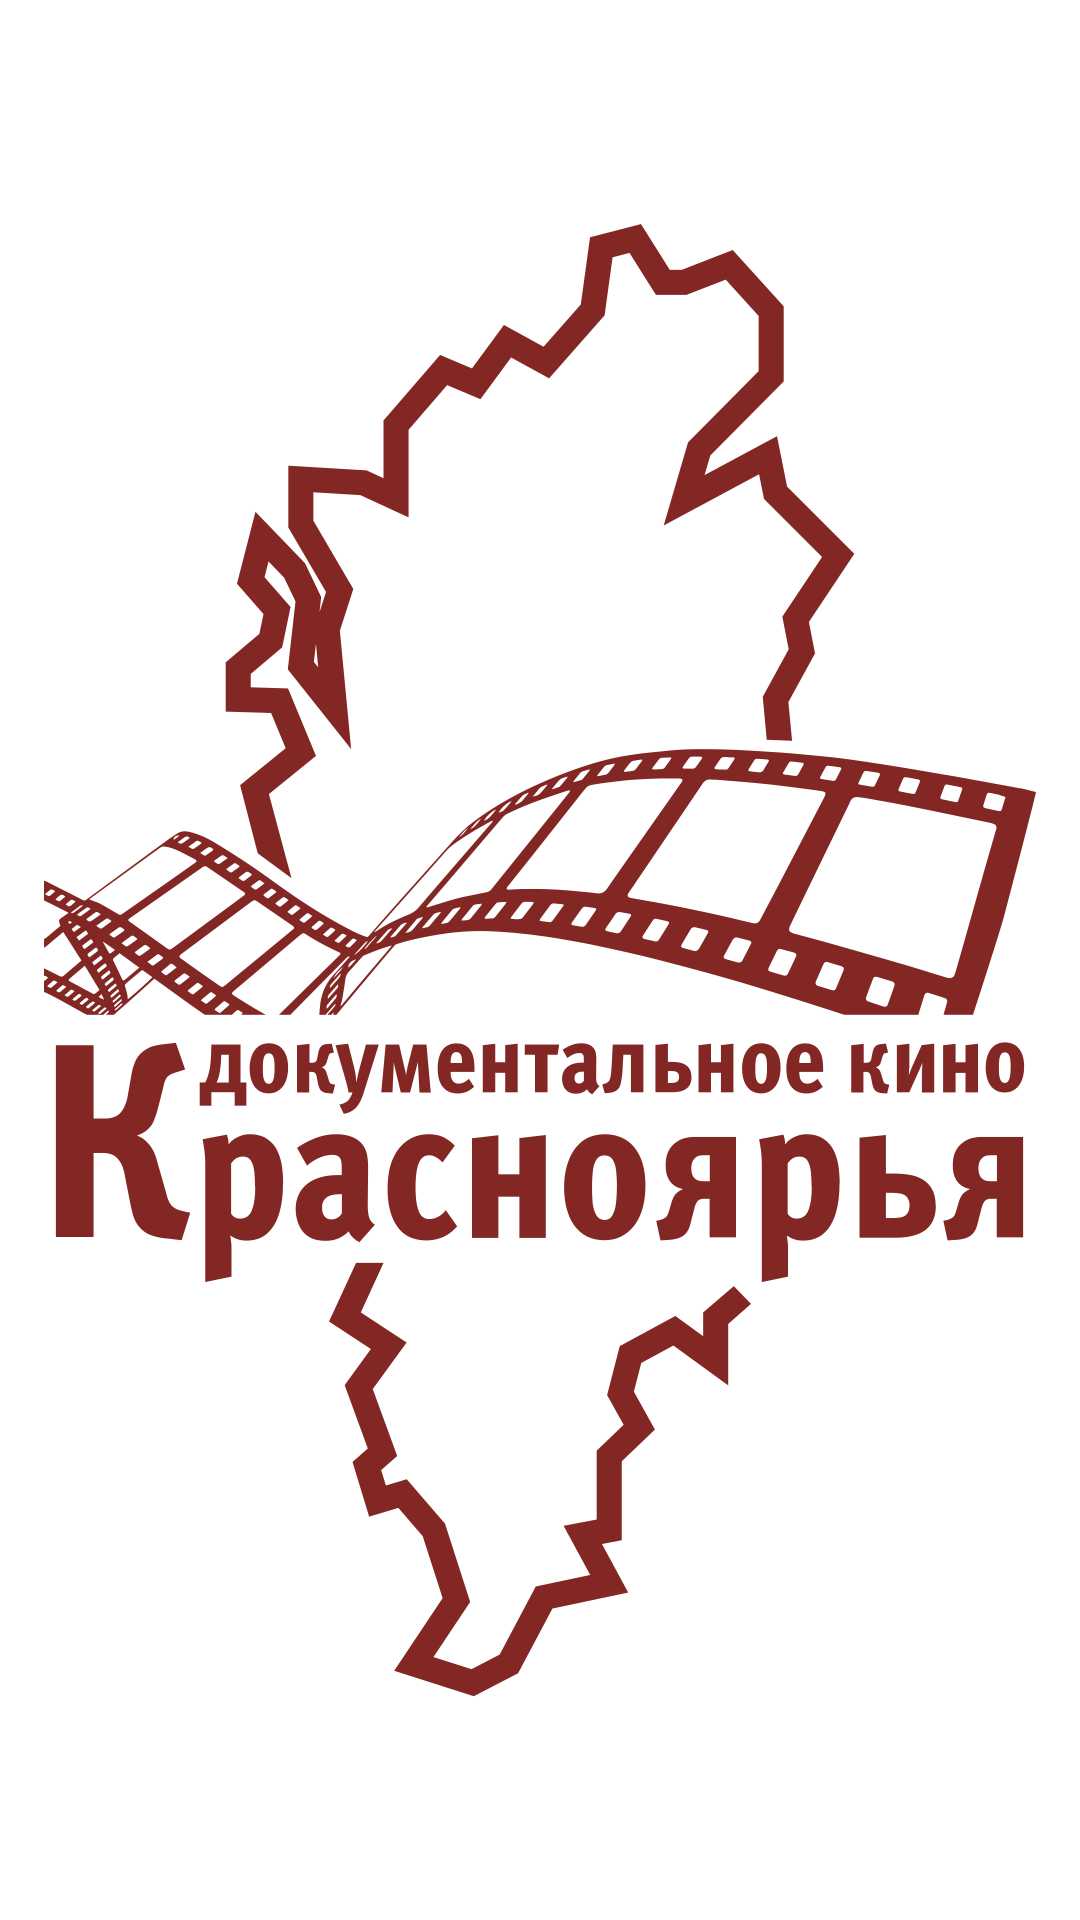 Продлен прием заявок на грант «Документальное кино Красноярского края»